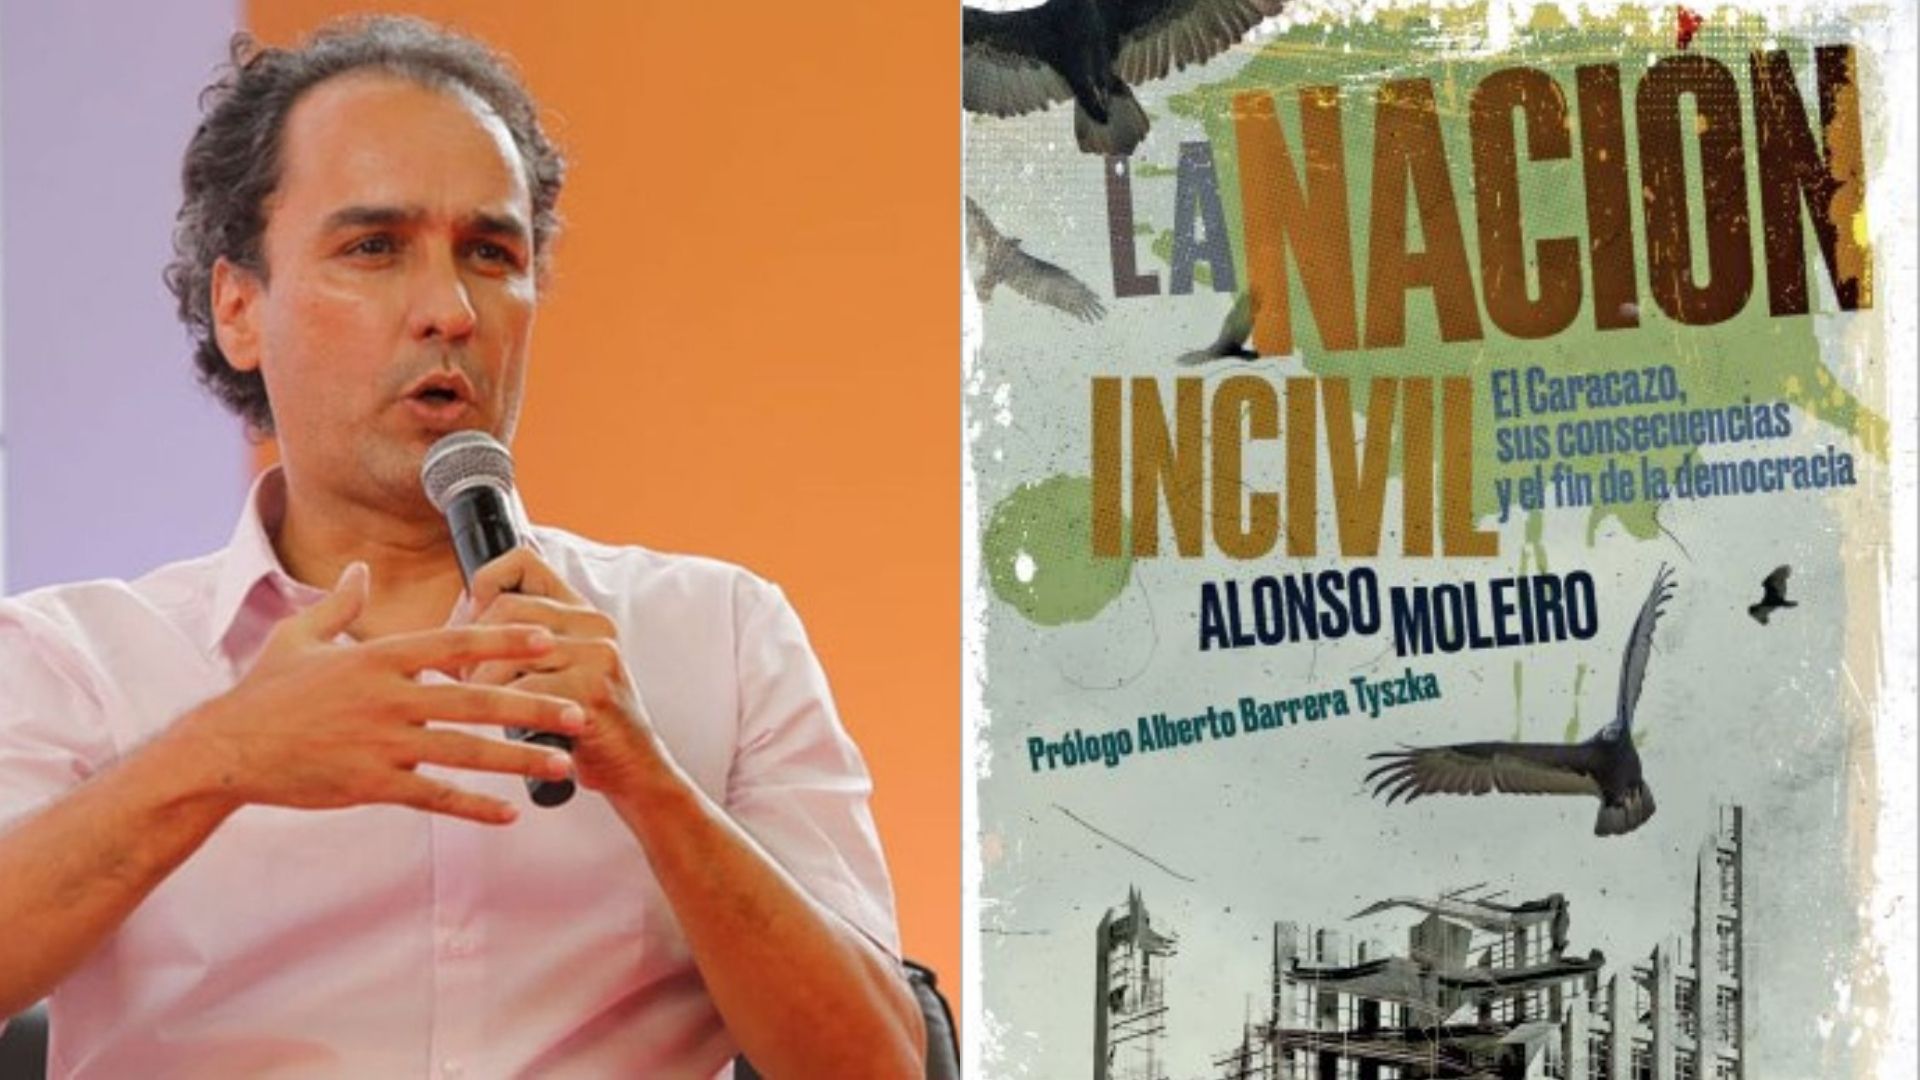 «La nación incivil», un examen del Caracazo y las consecuencias visibles en la historia reciente